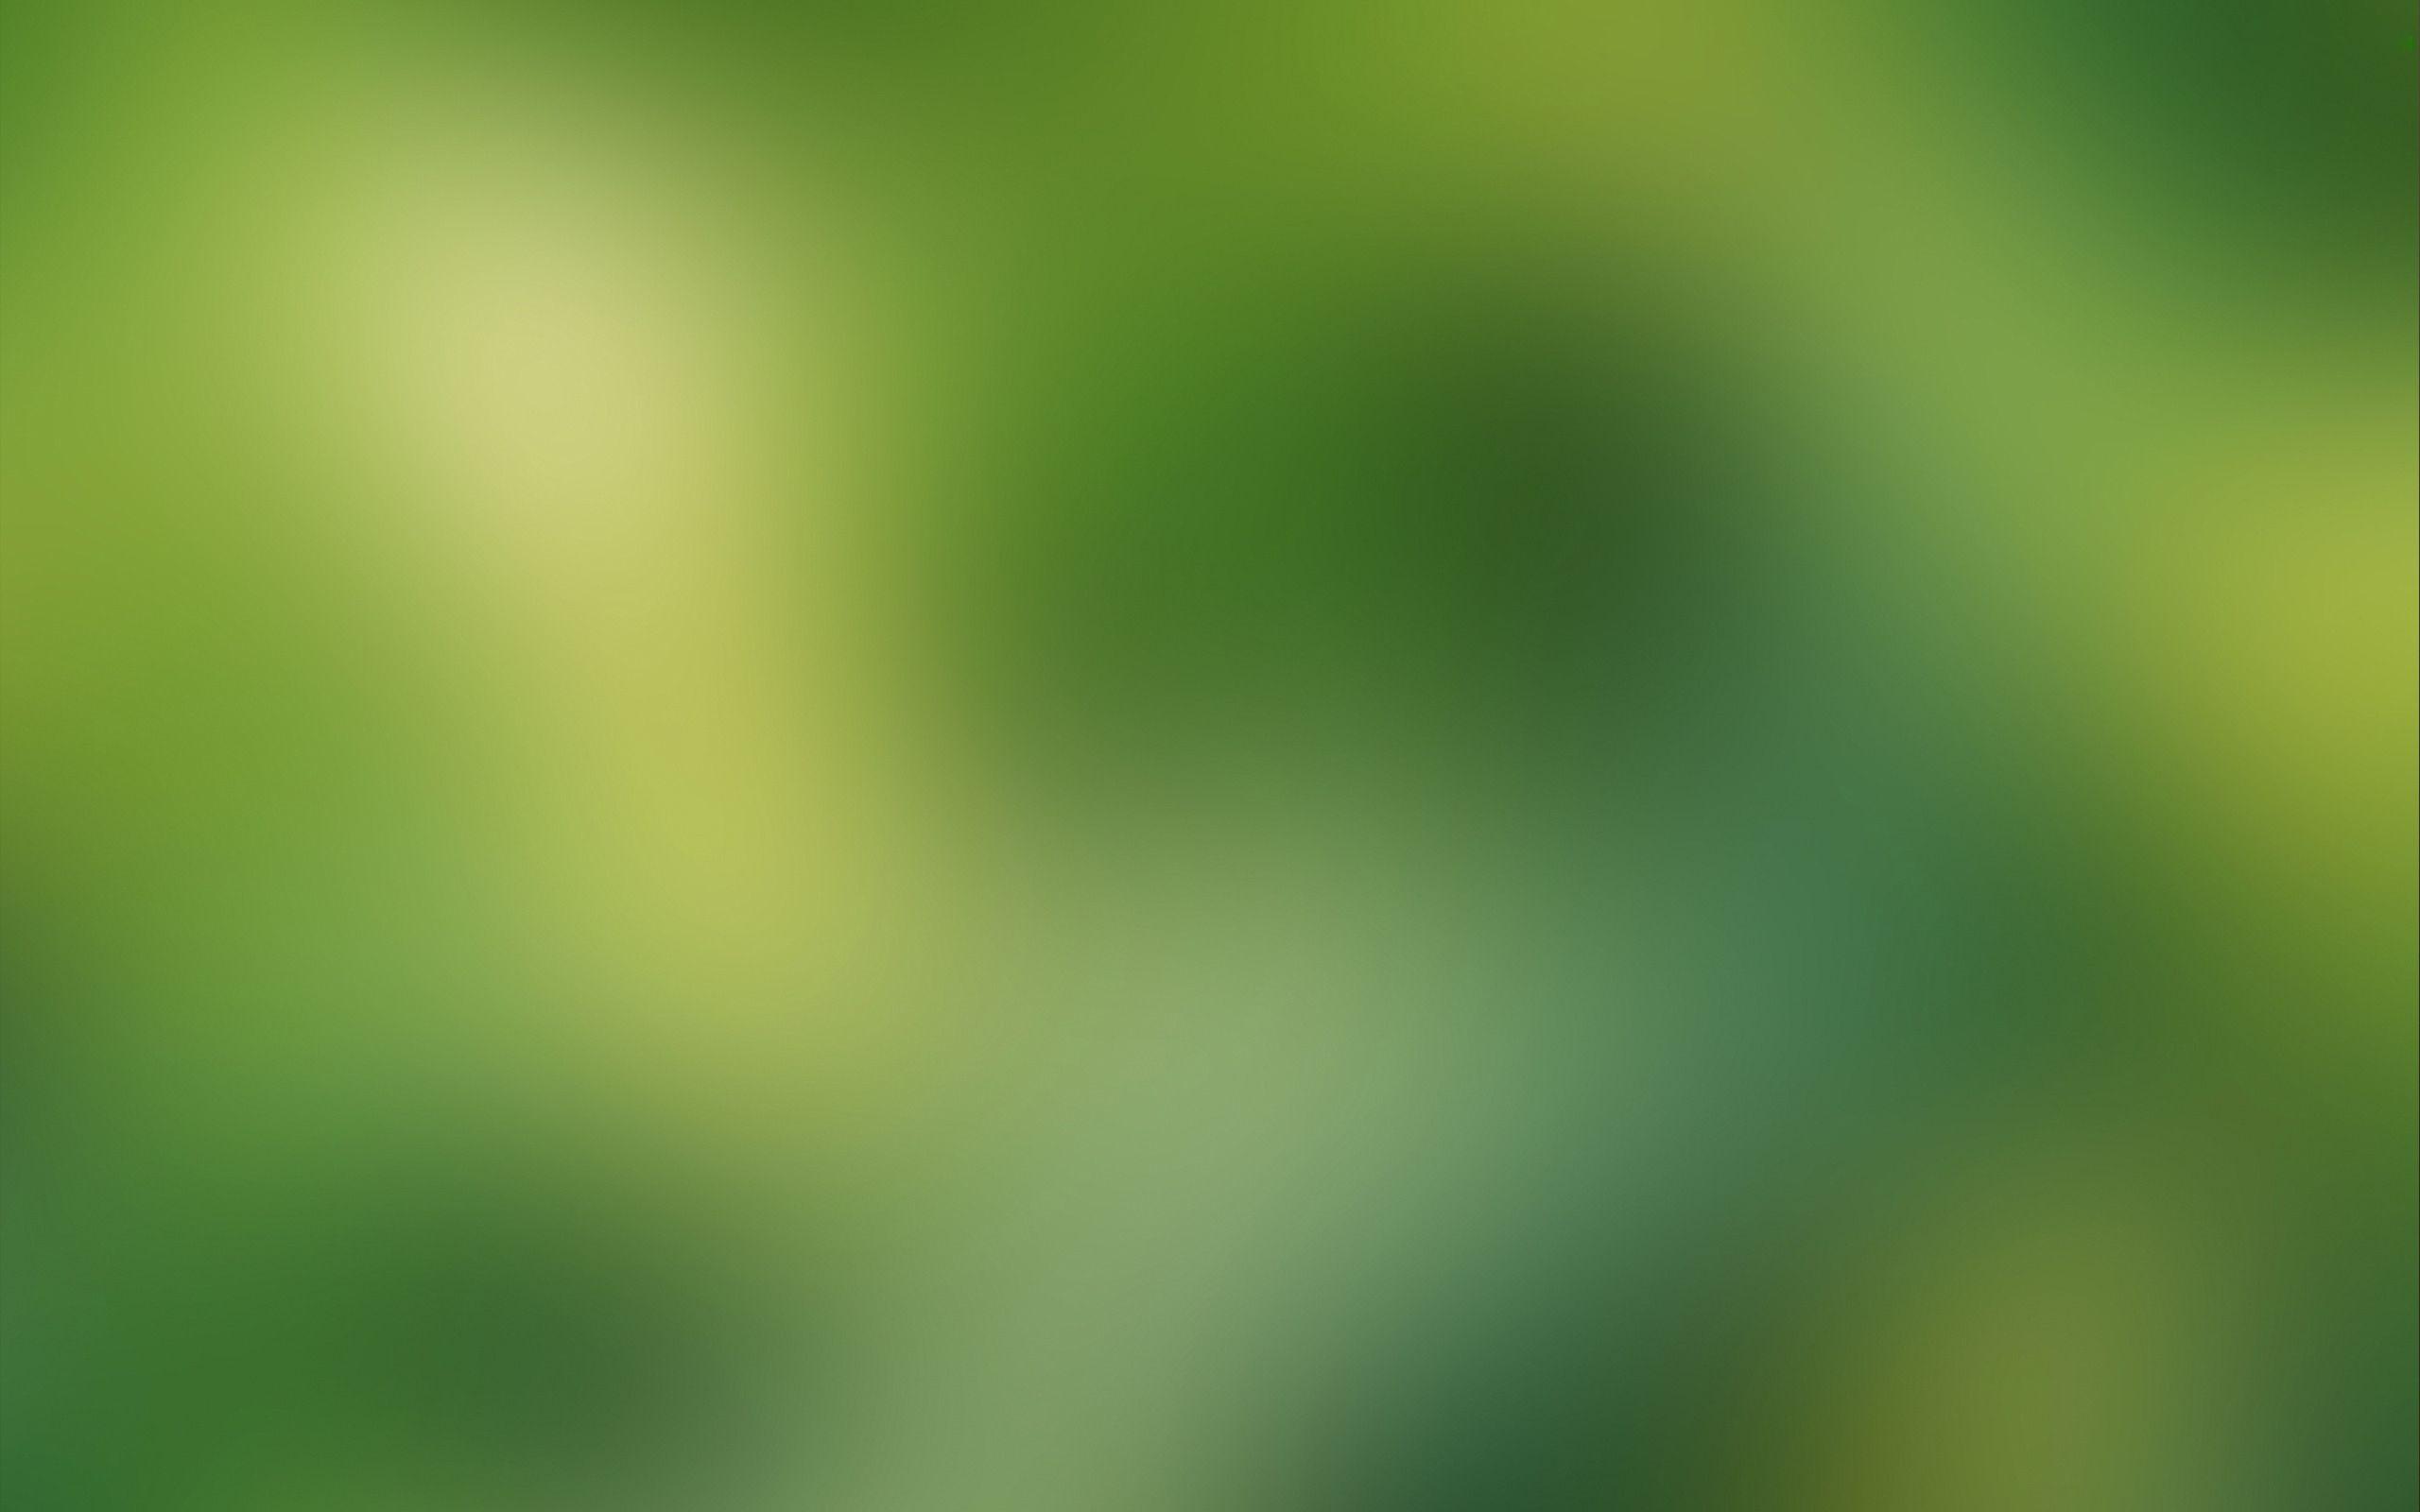 Blur PC Wallpapers - Top Những Hình Ảnh Đẹp